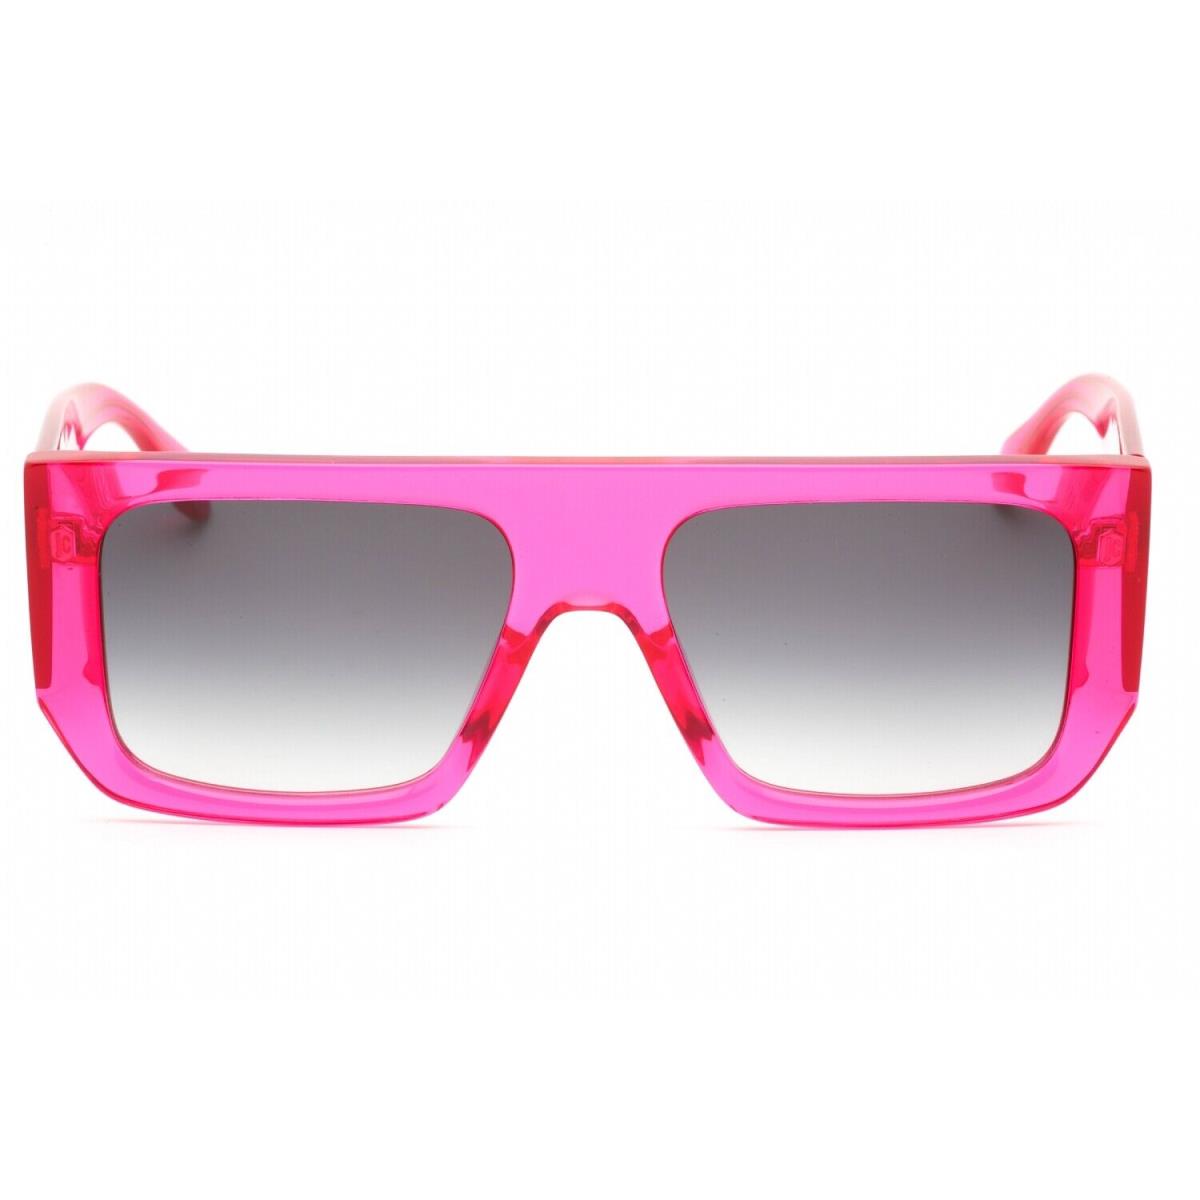 Just Cavalli SJC022-ATE-56 Sunglasses Size 56mm 140mm 18mm Pink Women